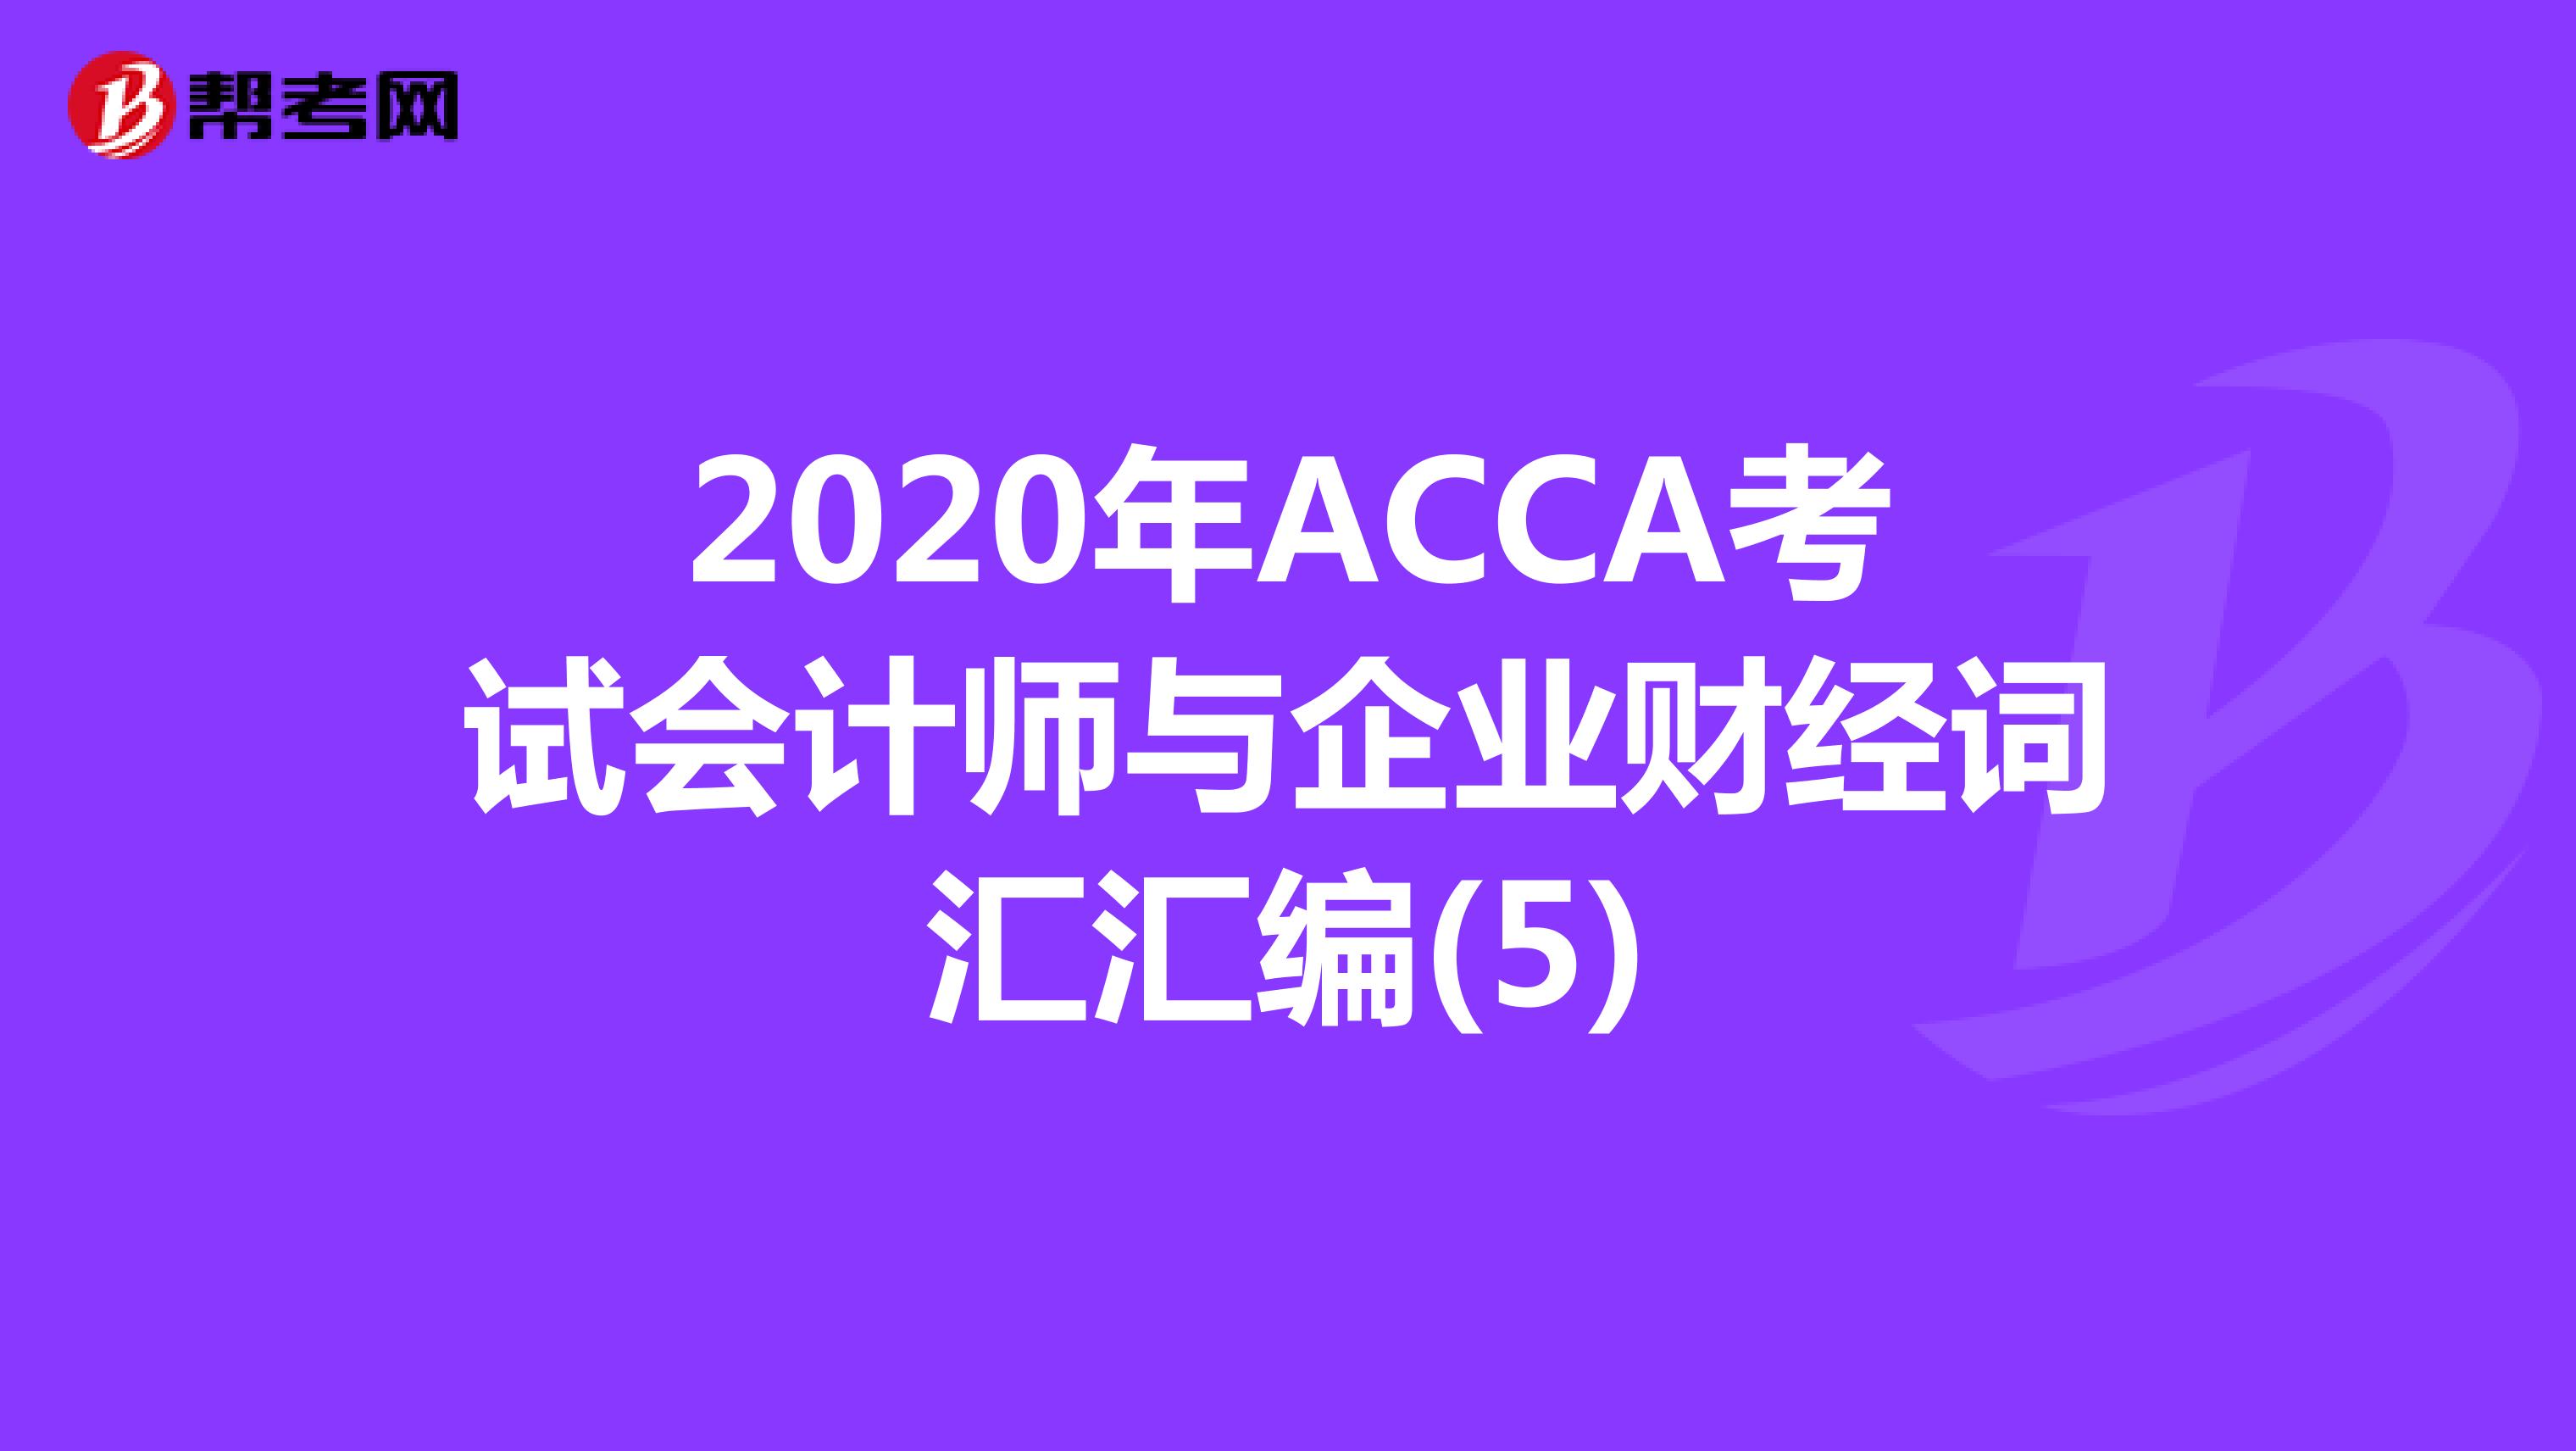 2020年ACCA考试会计师与企业财经词汇汇编(5)